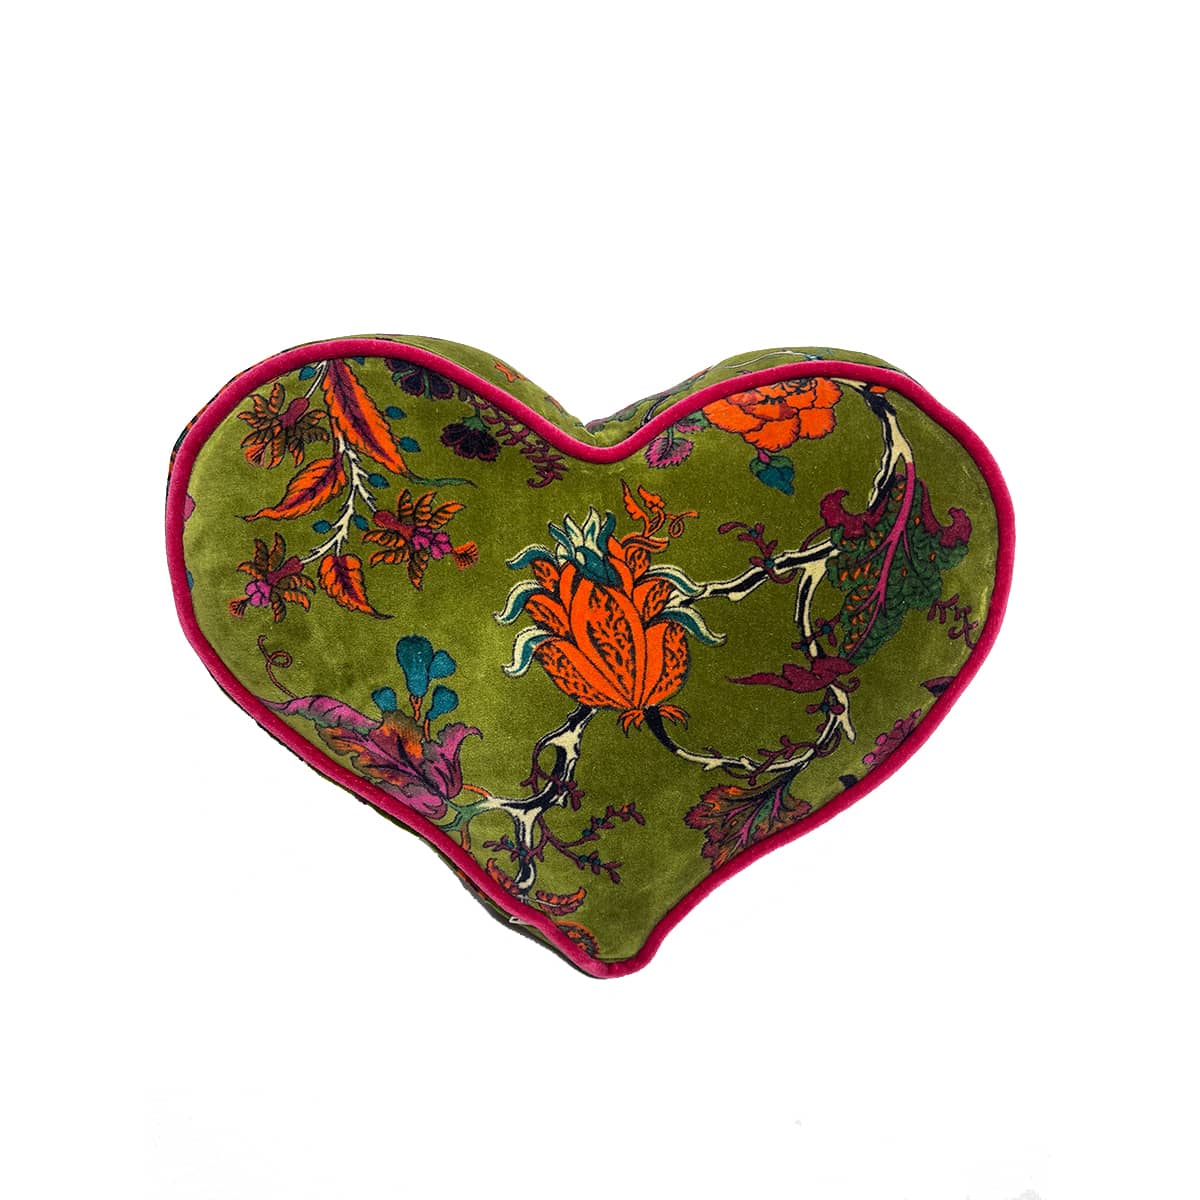 Heart Pillow – Floral on moss green